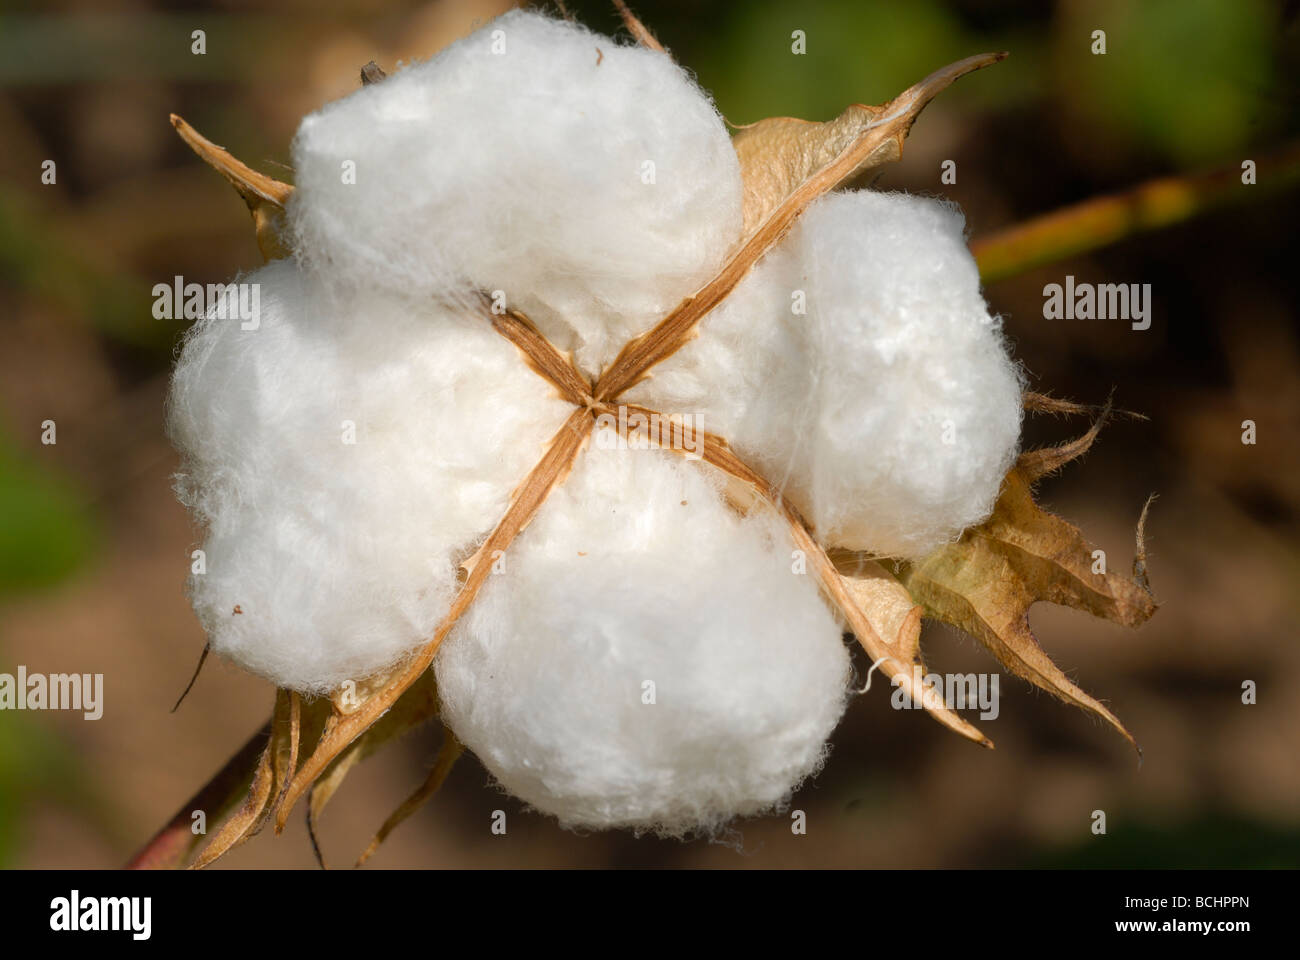 West-africa, Mali, Bio Fairtrade cotton , pianta di cotone , maturano boll formazione con fibra bianca Foto Stock